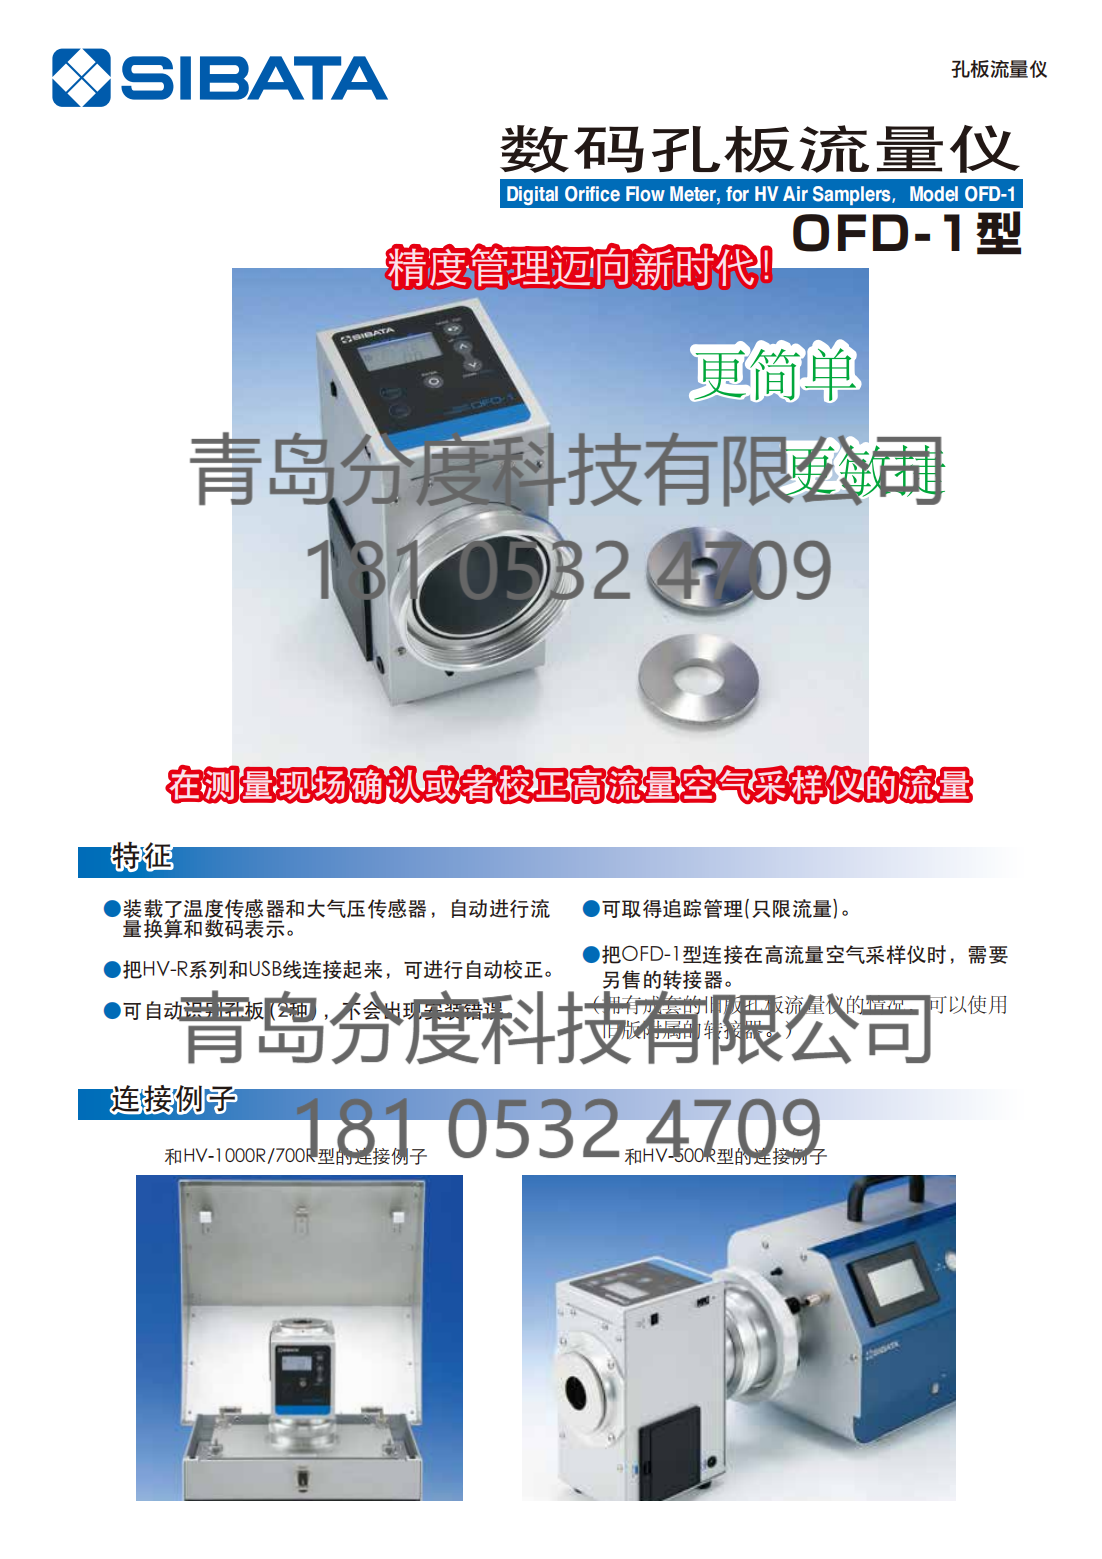 日本柴田SIBATA 数码孔板流量仪OFD-1型